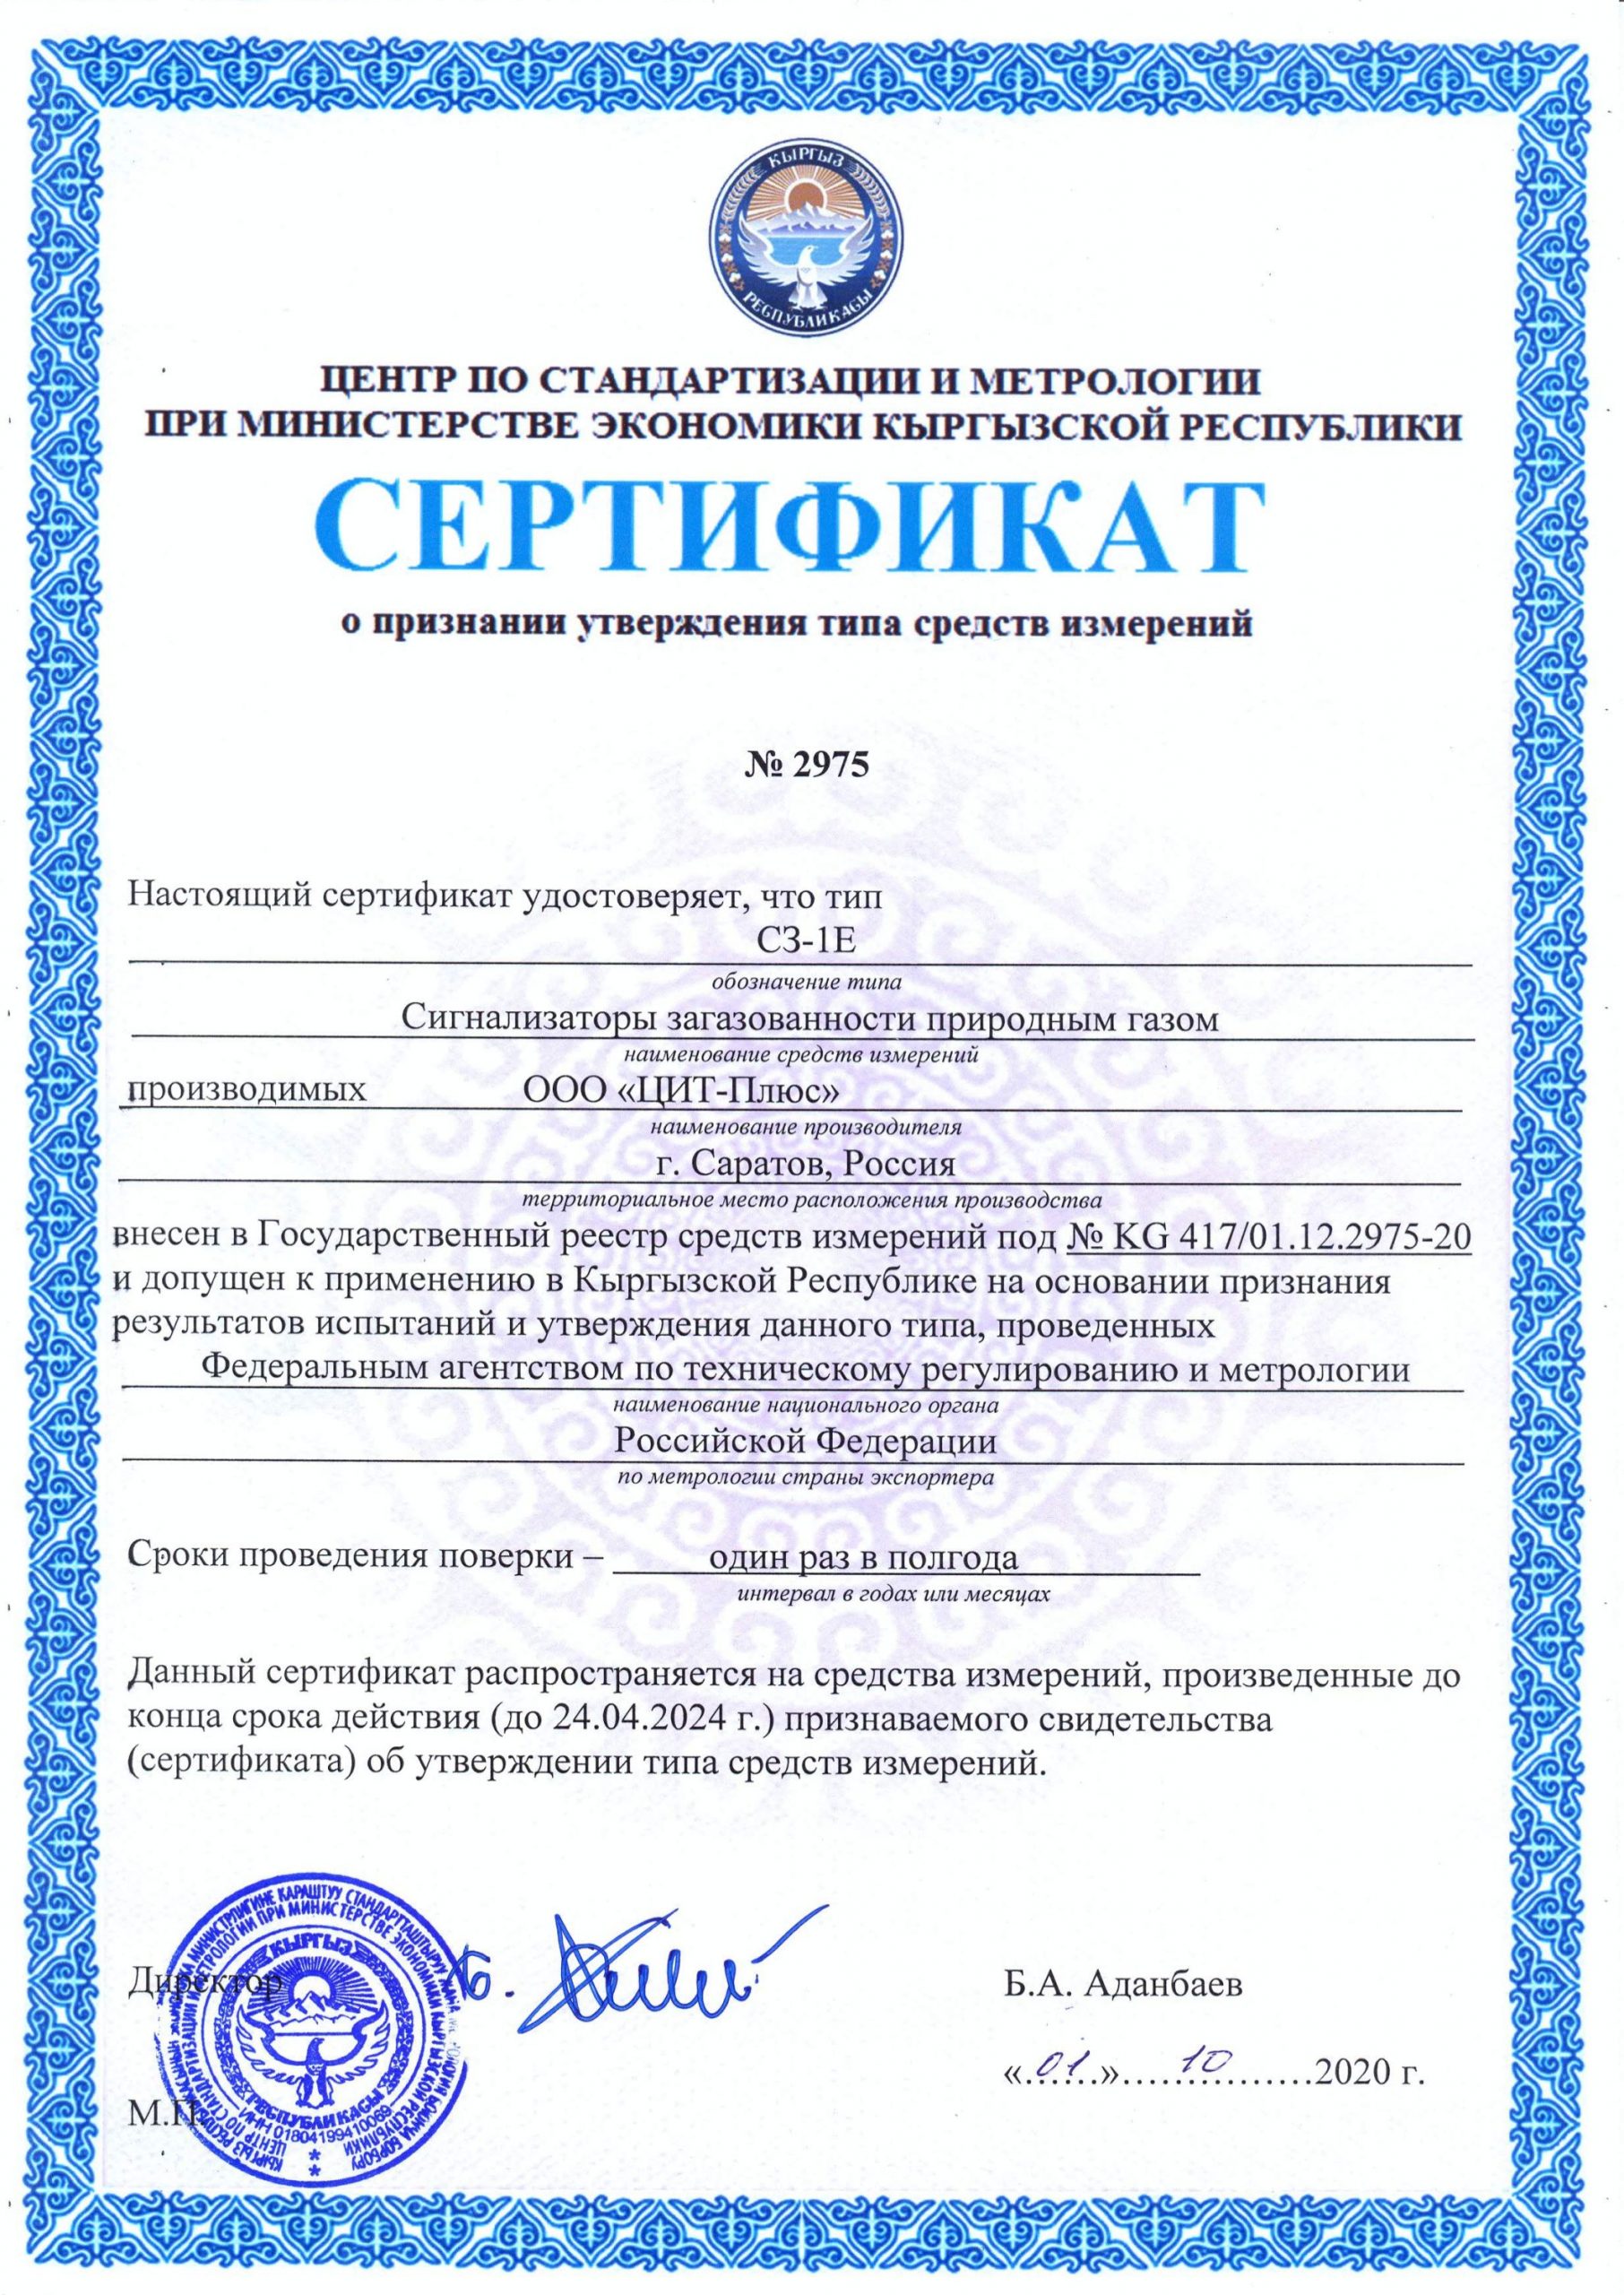 Сертификаты о признании утверждения типа средств измерений (Киргизская Республика)